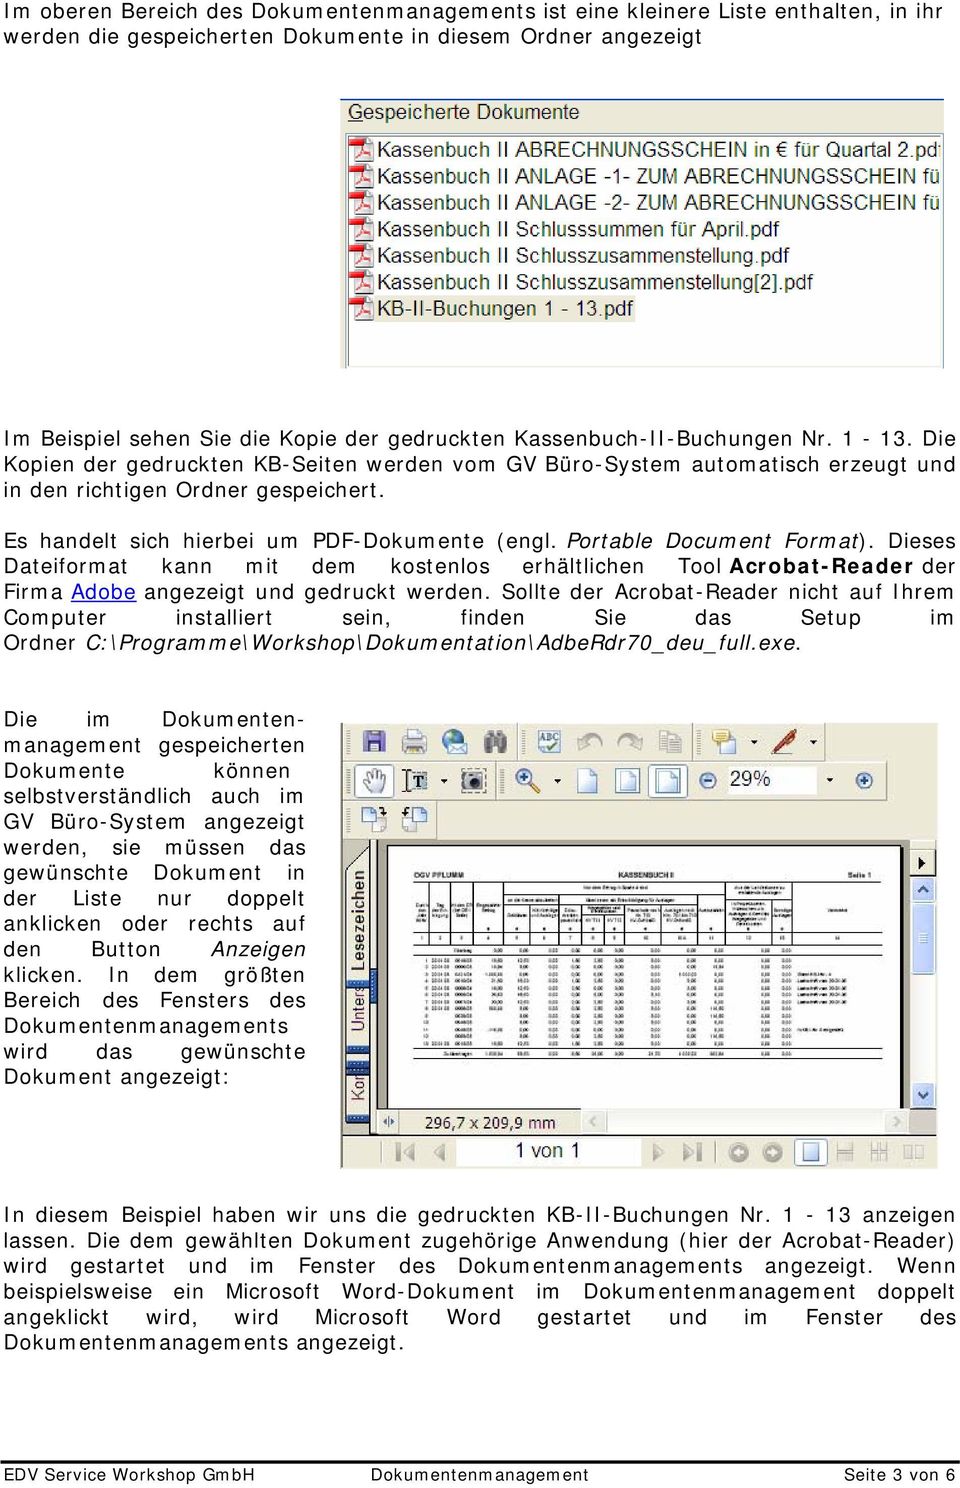 Es handelt sich hierbei um PDF-Dokumente (engl. Portable Document Format). Dieses Dateiformat kann mit dem kostenlos erhältlichen Tool Acrobat-Reader der Firma Adobe angezeigt und gedruckt werden.